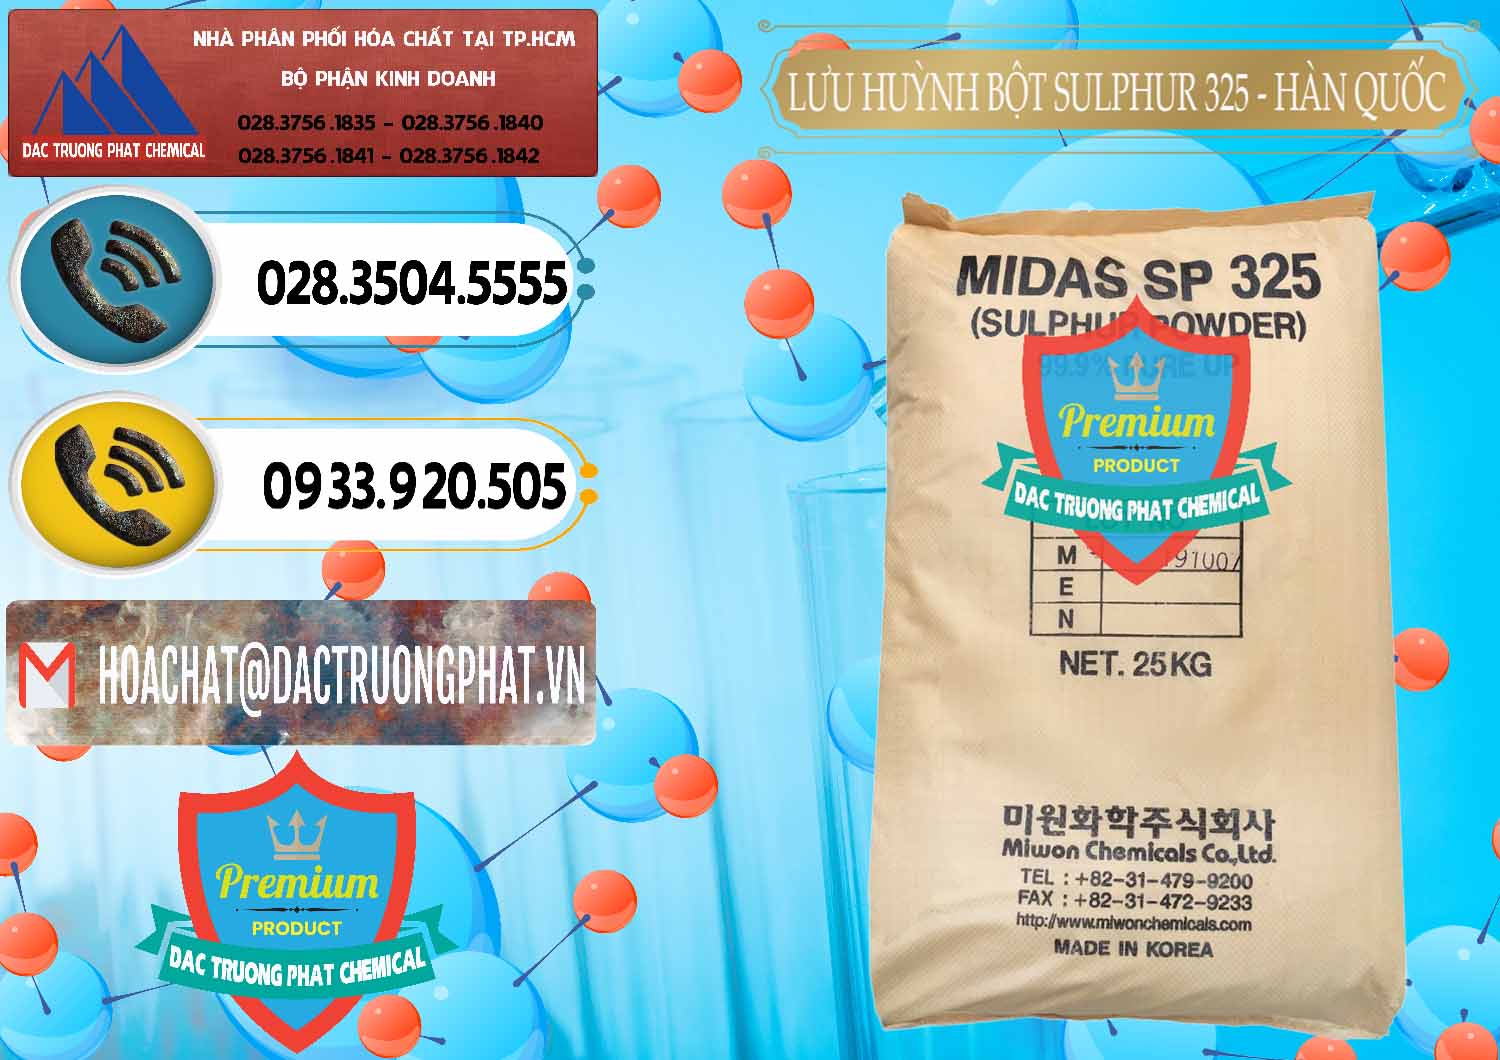 Nơi chuyên bán ( cung cấp ) Lưu huỳnh Bột - Sulfur Powder Midas SP 325 Hàn Quốc Korea - 0198 - Công ty cung cấp ( phân phối ) hóa chất tại TP.HCM - hoachatdetnhuom.vn